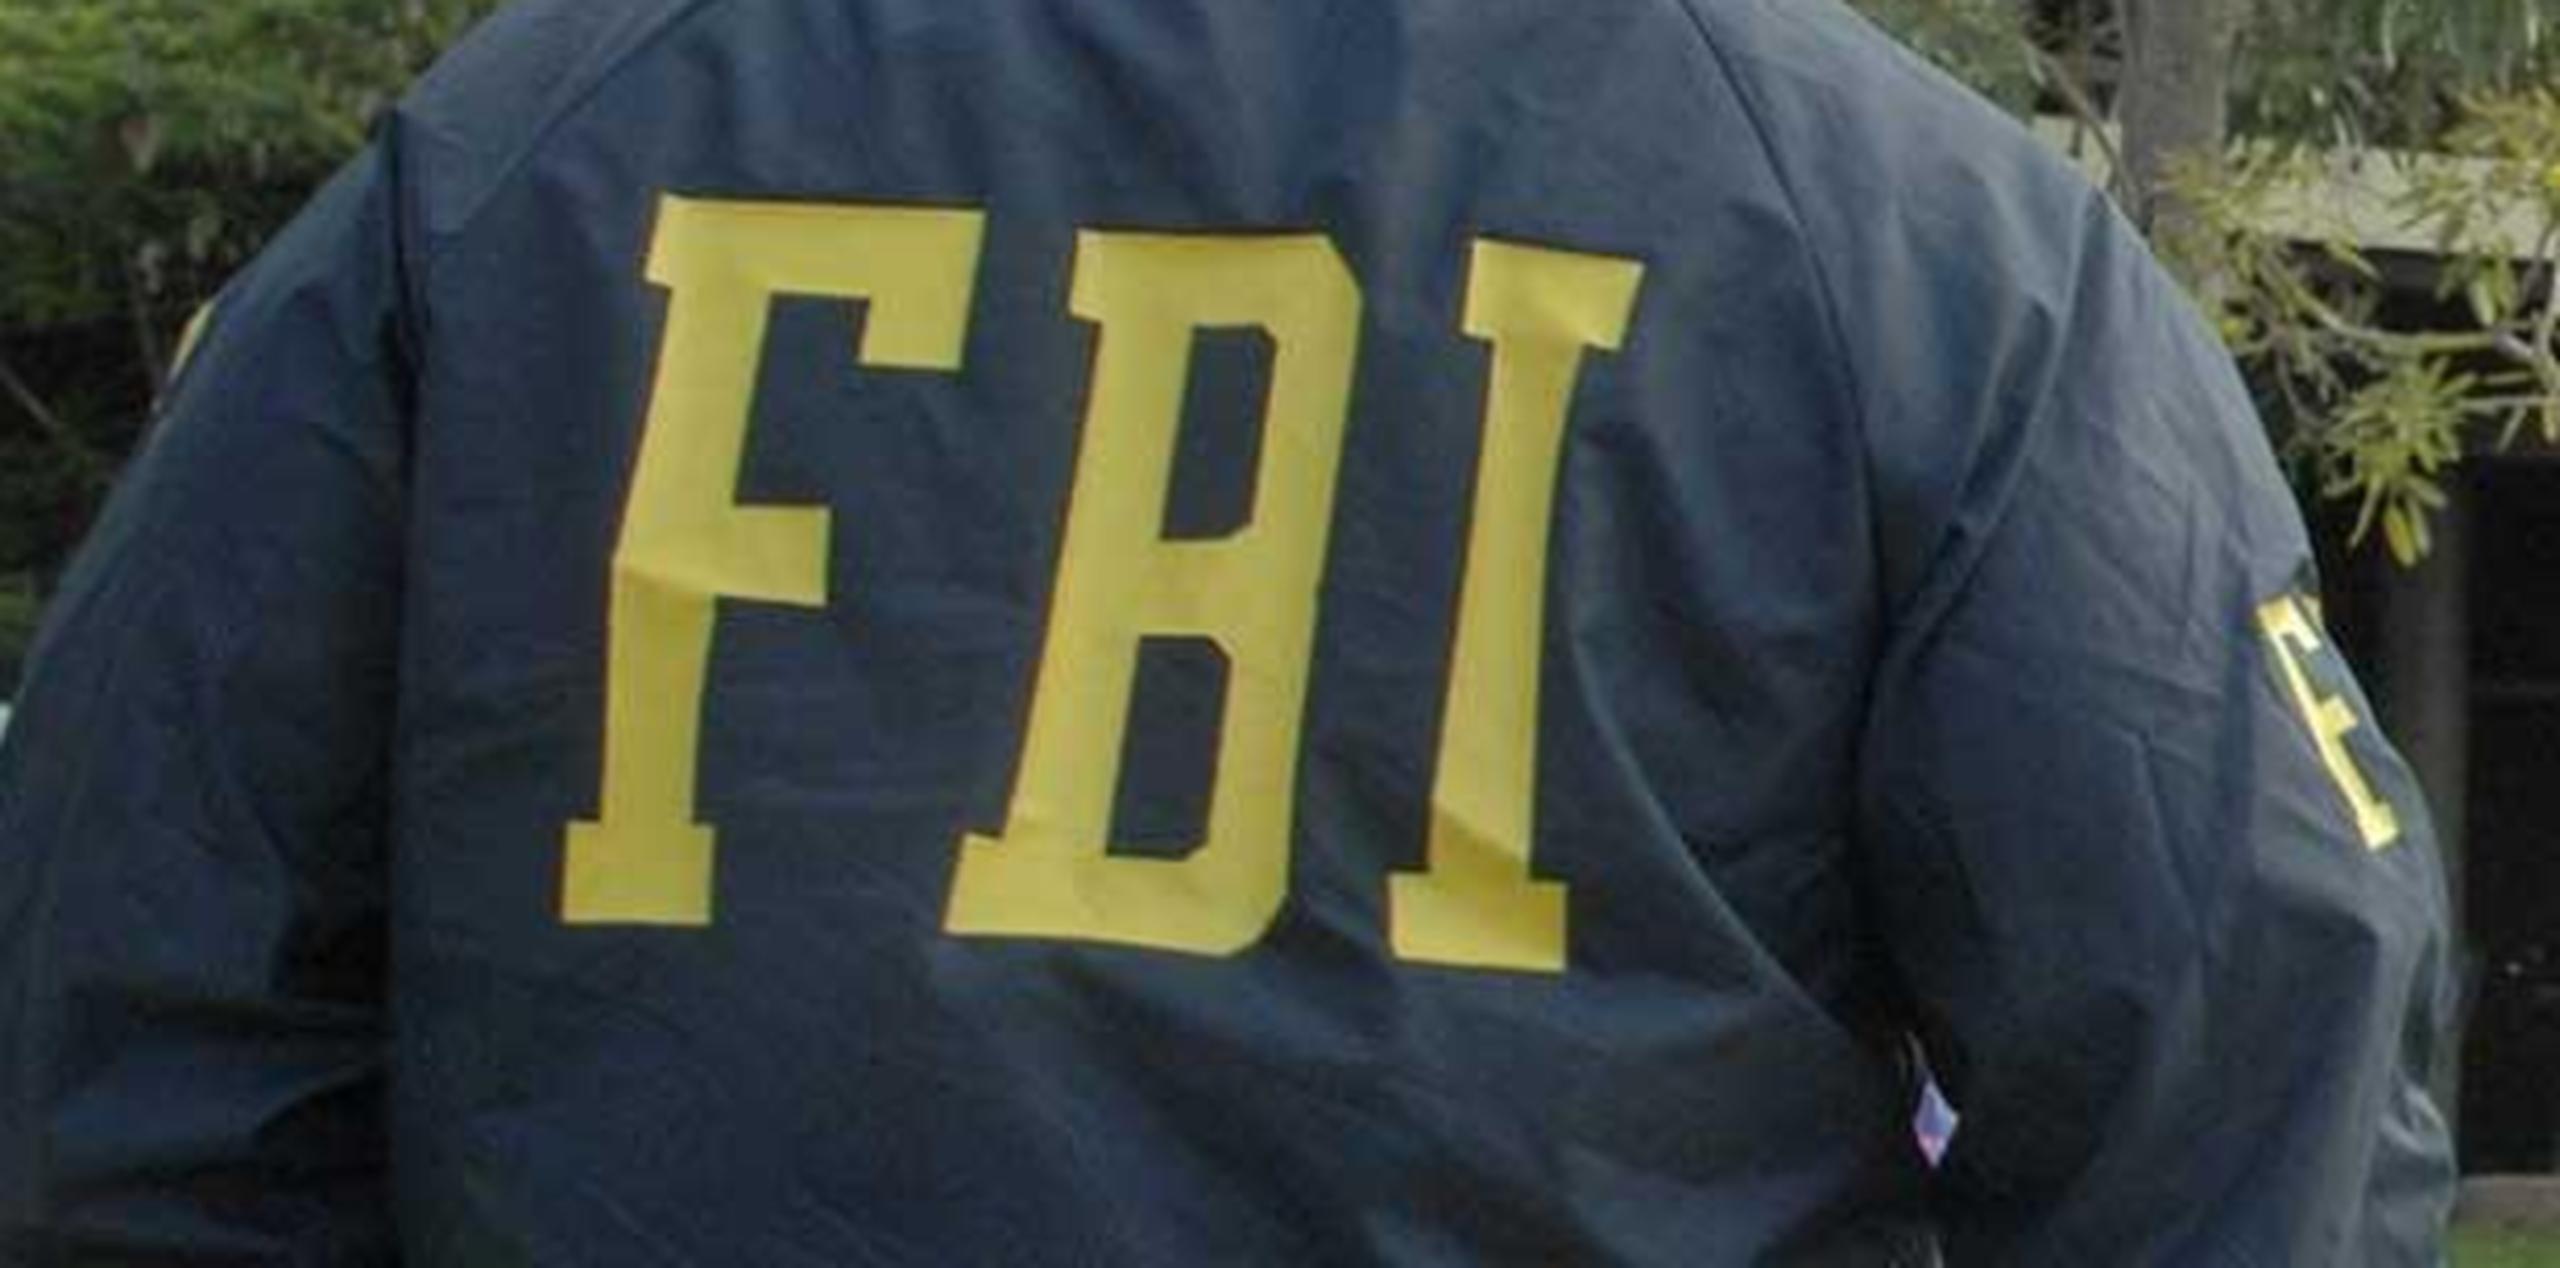 El FBI fue la agencia que investigó las irregularidades detectadas por Aflac en Puerto Rico, que llevaron a la acusación de unas 600 personas. (Archivo)